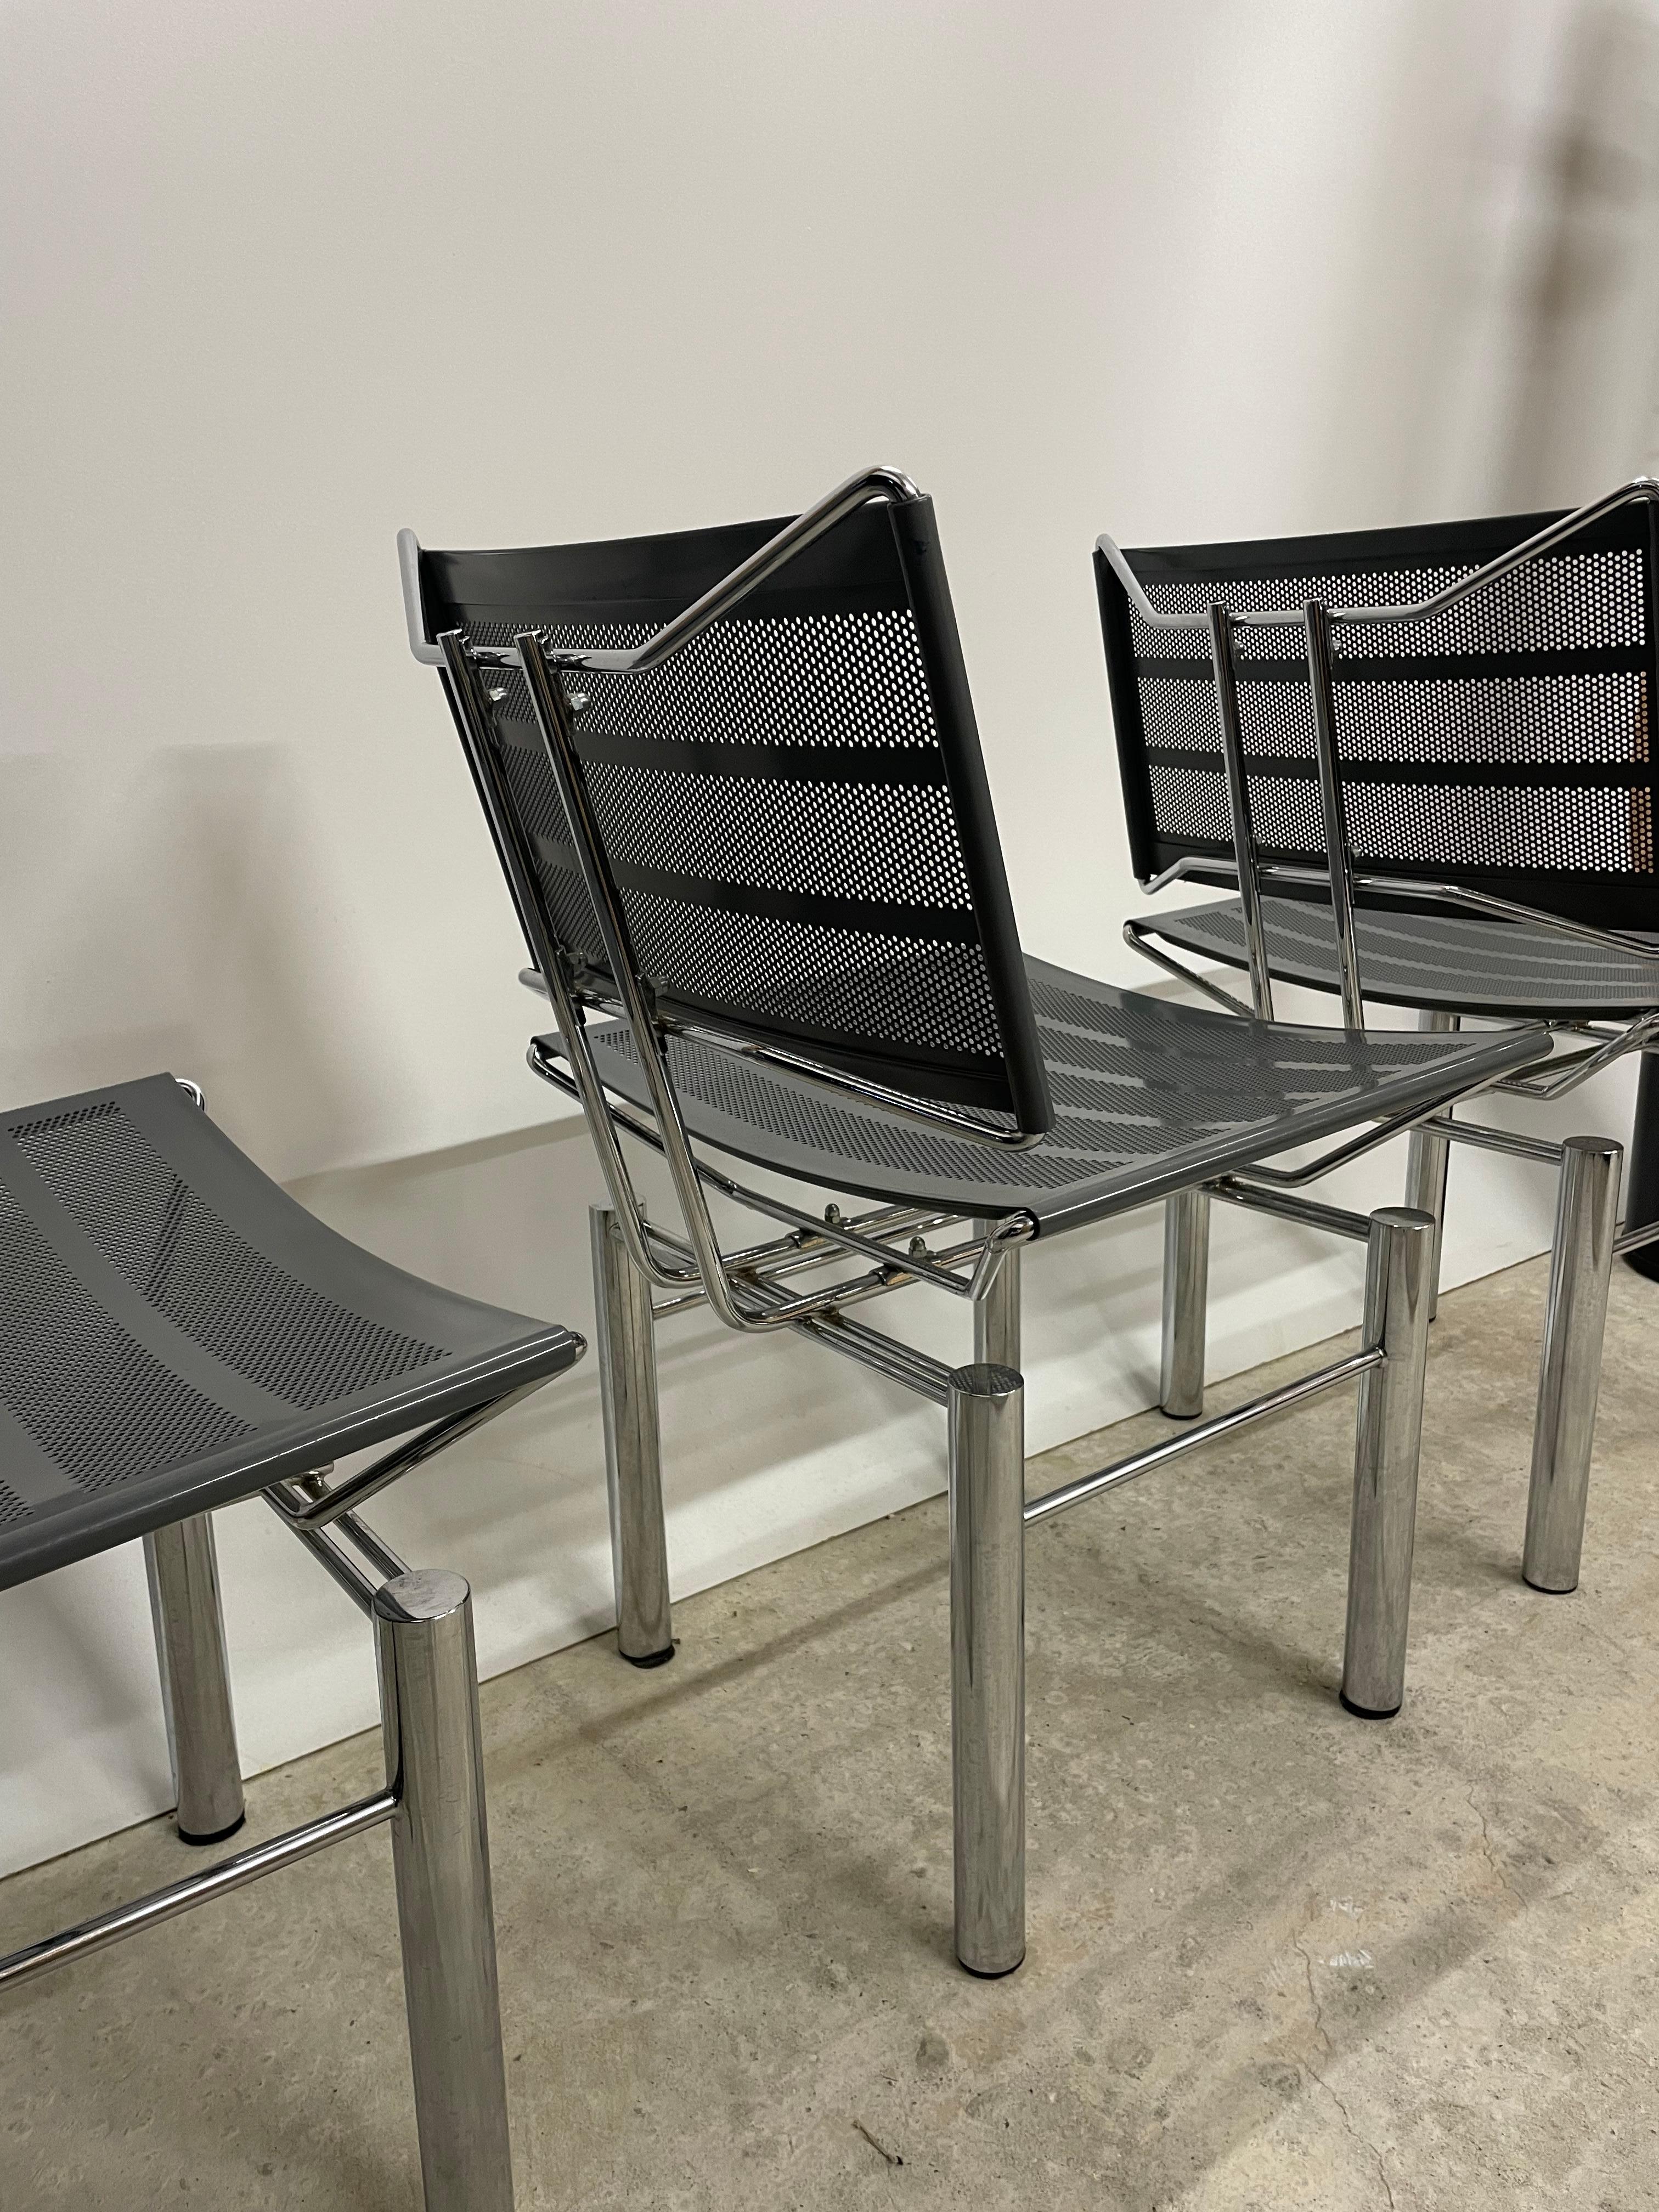 Was ein schöner klassischer Stuhl im postmodernen Stil. Designt wurde der Stuhl von Hans Ulrich Bitsch für Kusch & Co in den 80er Jahren. 

Dieses sehr seltene Meisterwerk besteht komplett aus Stahl und verchromten Stahl. Somit wiegt ein einziger